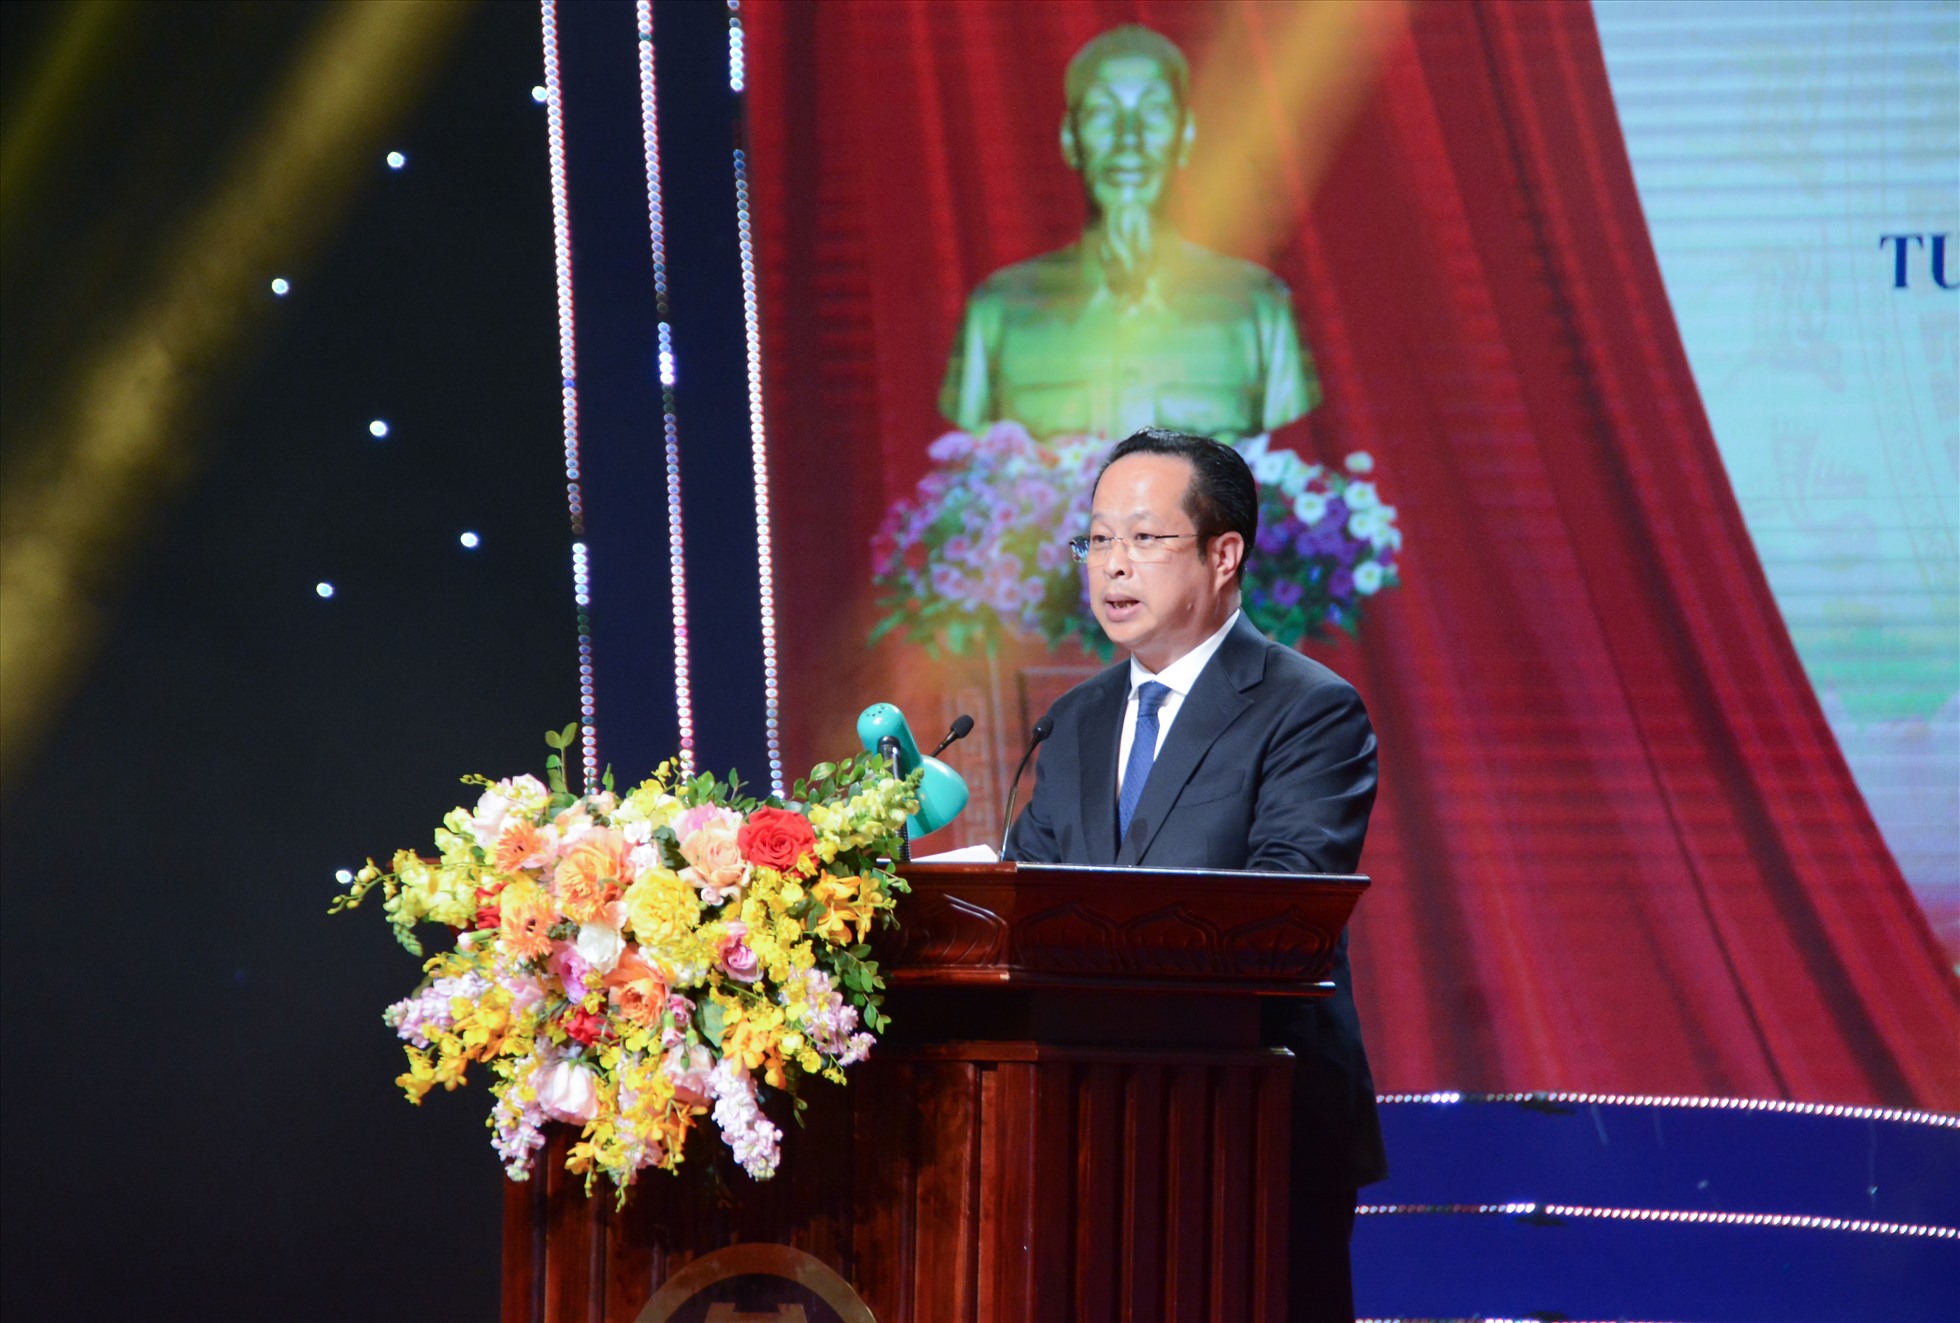 Ông Trần Thế Cương - Giám đốc Sở GDĐT Hà Nội phát biểu tại buổi lễ.